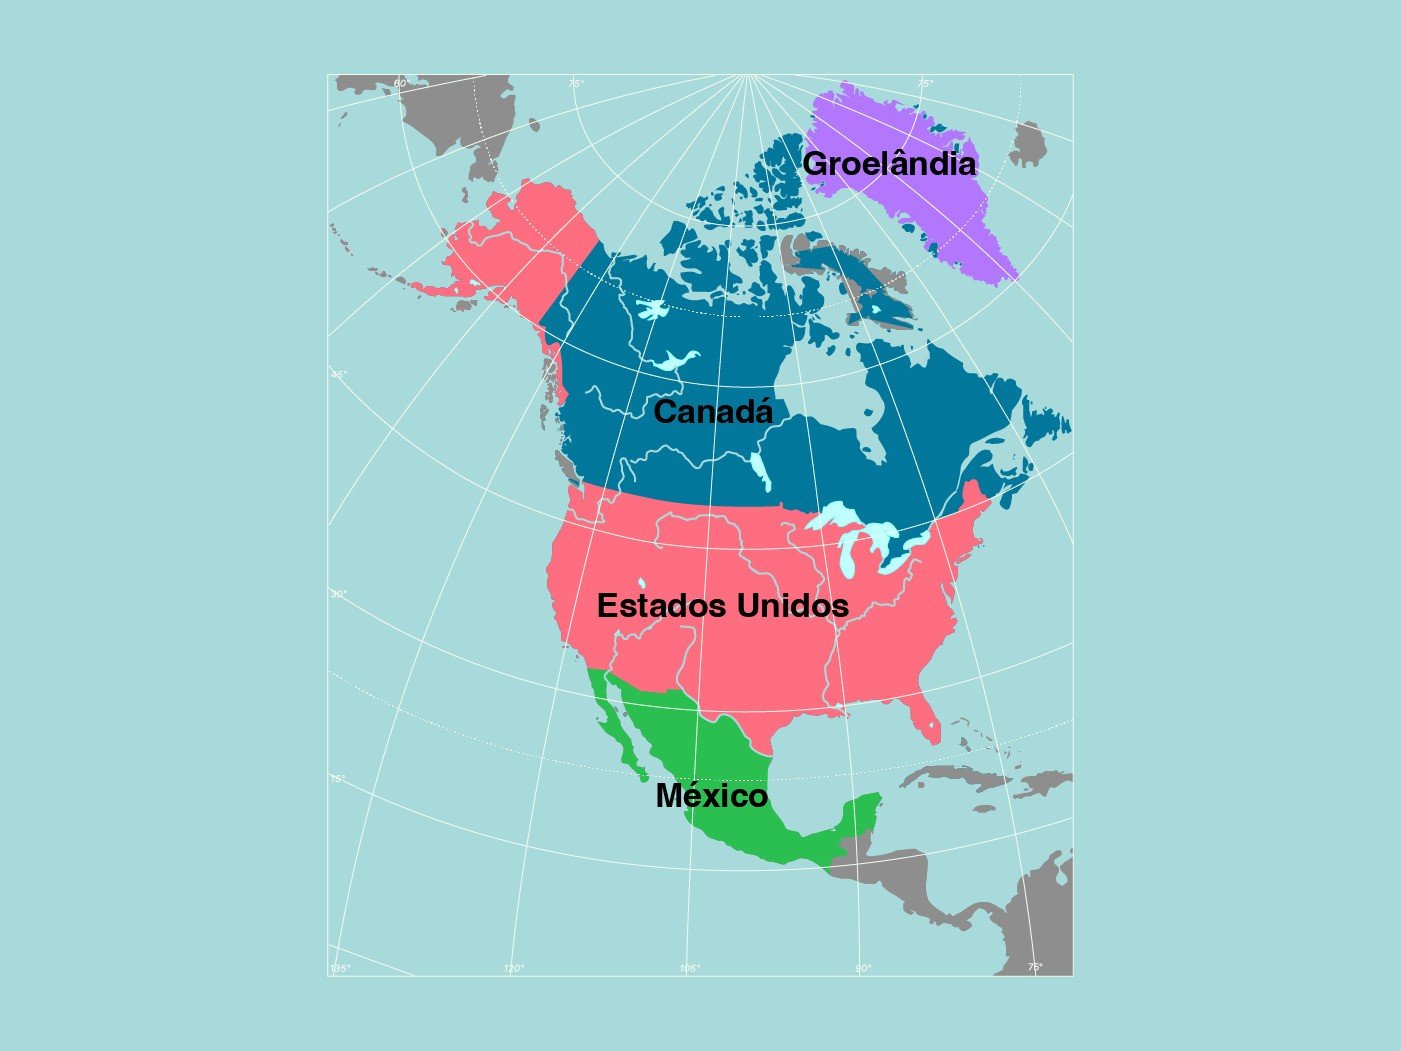 Mapa da América do Norte identificando os Estados Unidos, Canadá, México e Groelândia.